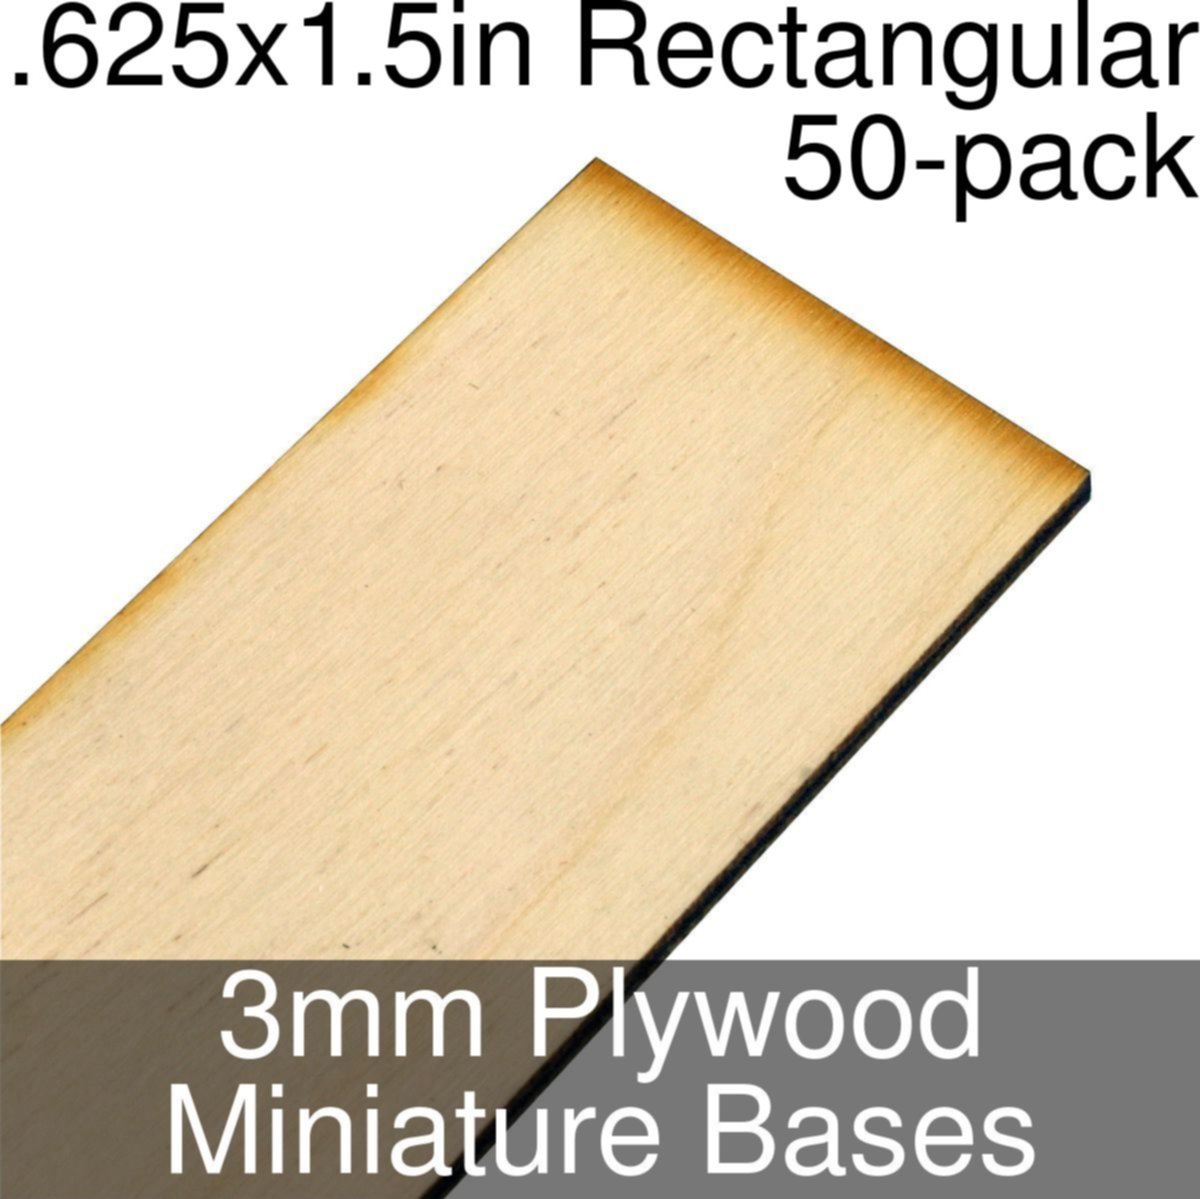 .625x1.5-pouces bases miniatures rectangulaires